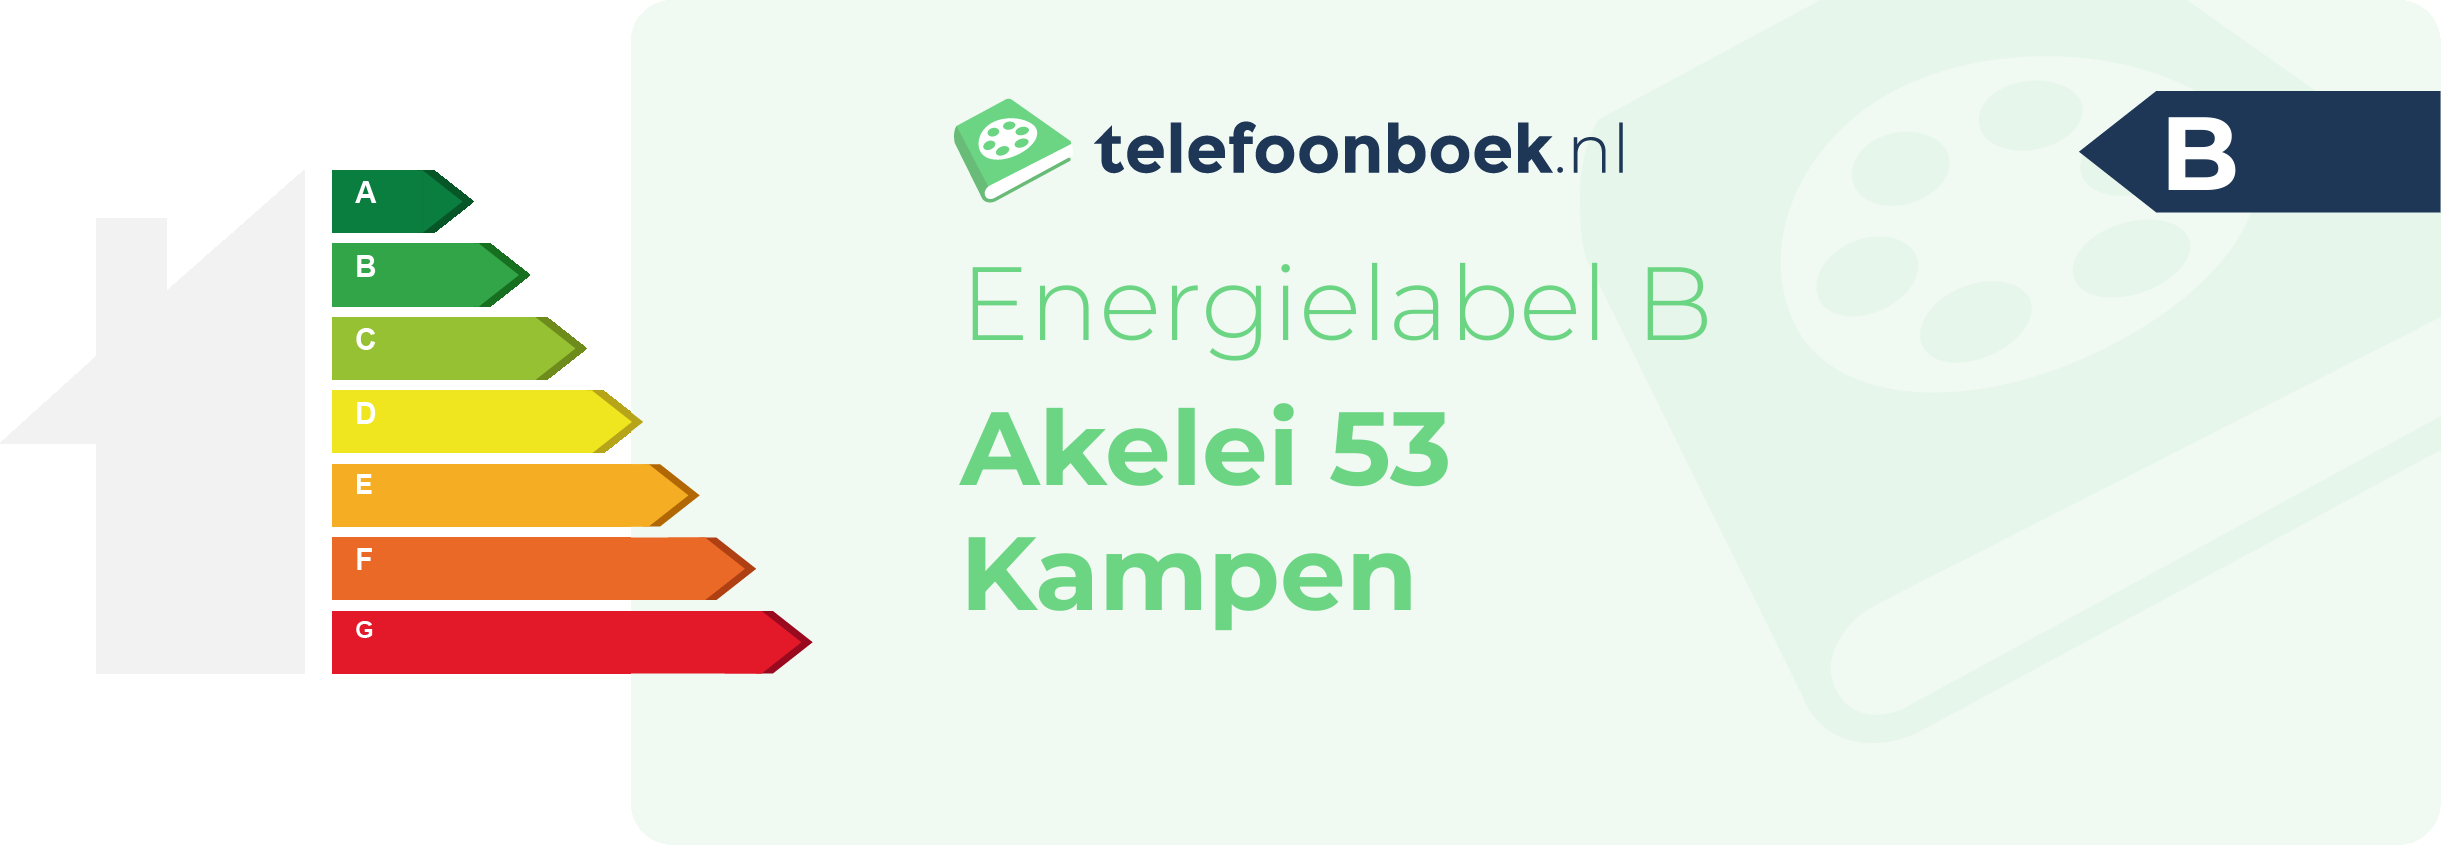 Energielabel Akelei 53 Kampen